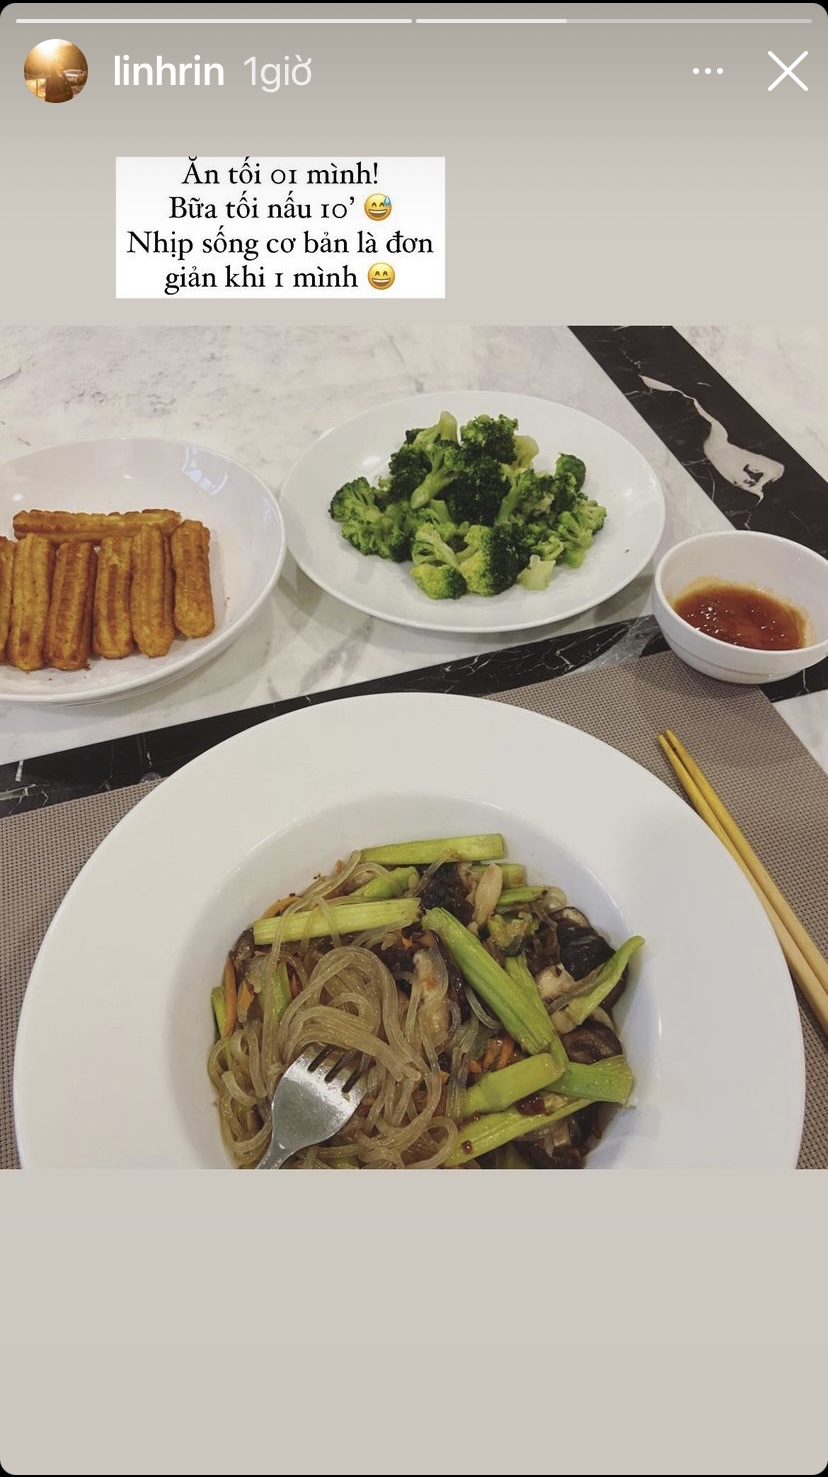 Sau khi bạn trai Philip Nguyễn đi Mỹ, Linh Rin chỉ mất khoảng 10 phút để chuẩn bị một bàn ăn tối một mình đơn giản nhưng đủ chất.